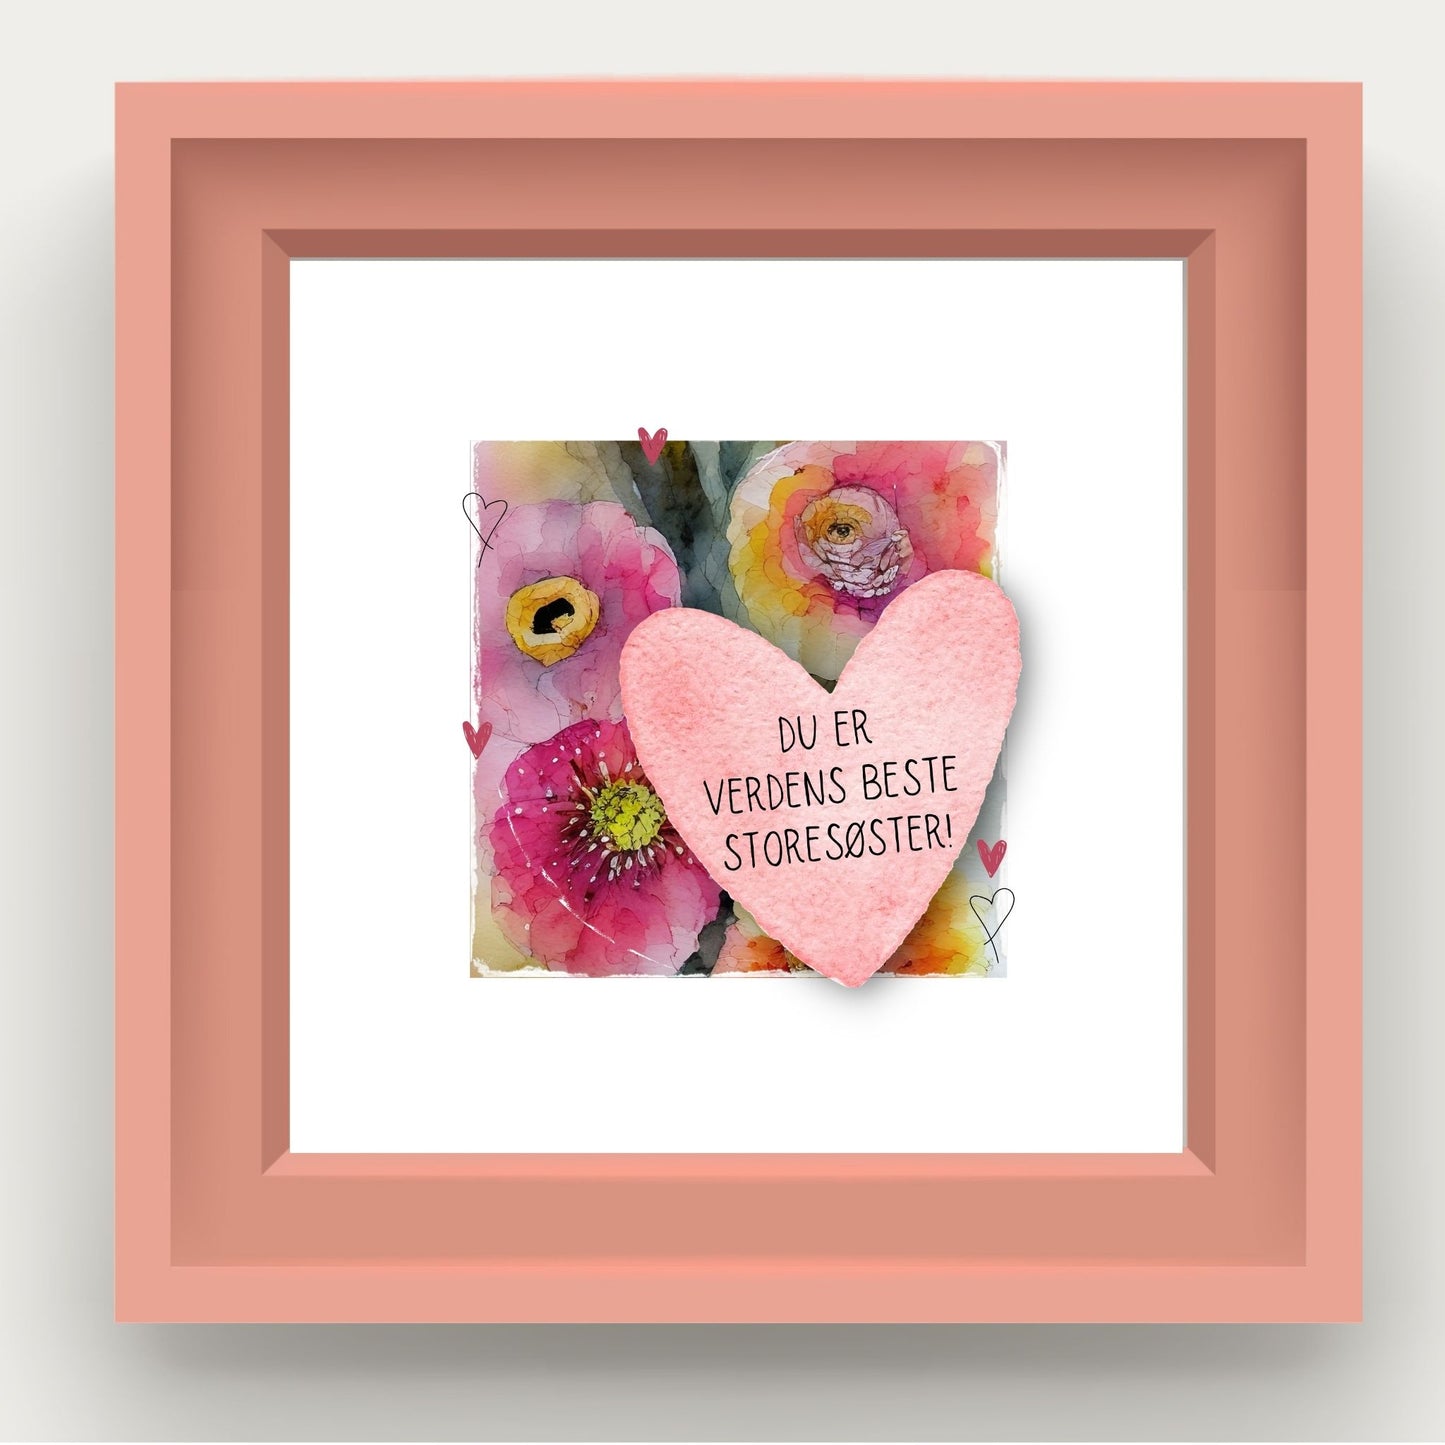 Grafisk plakat med et rosa hjerte påført tekst "Du er verdens beste lillesøster". Bagrunn i cerise og guloransje blomster. Illustrasjonen viser plakat i rosa ramme.